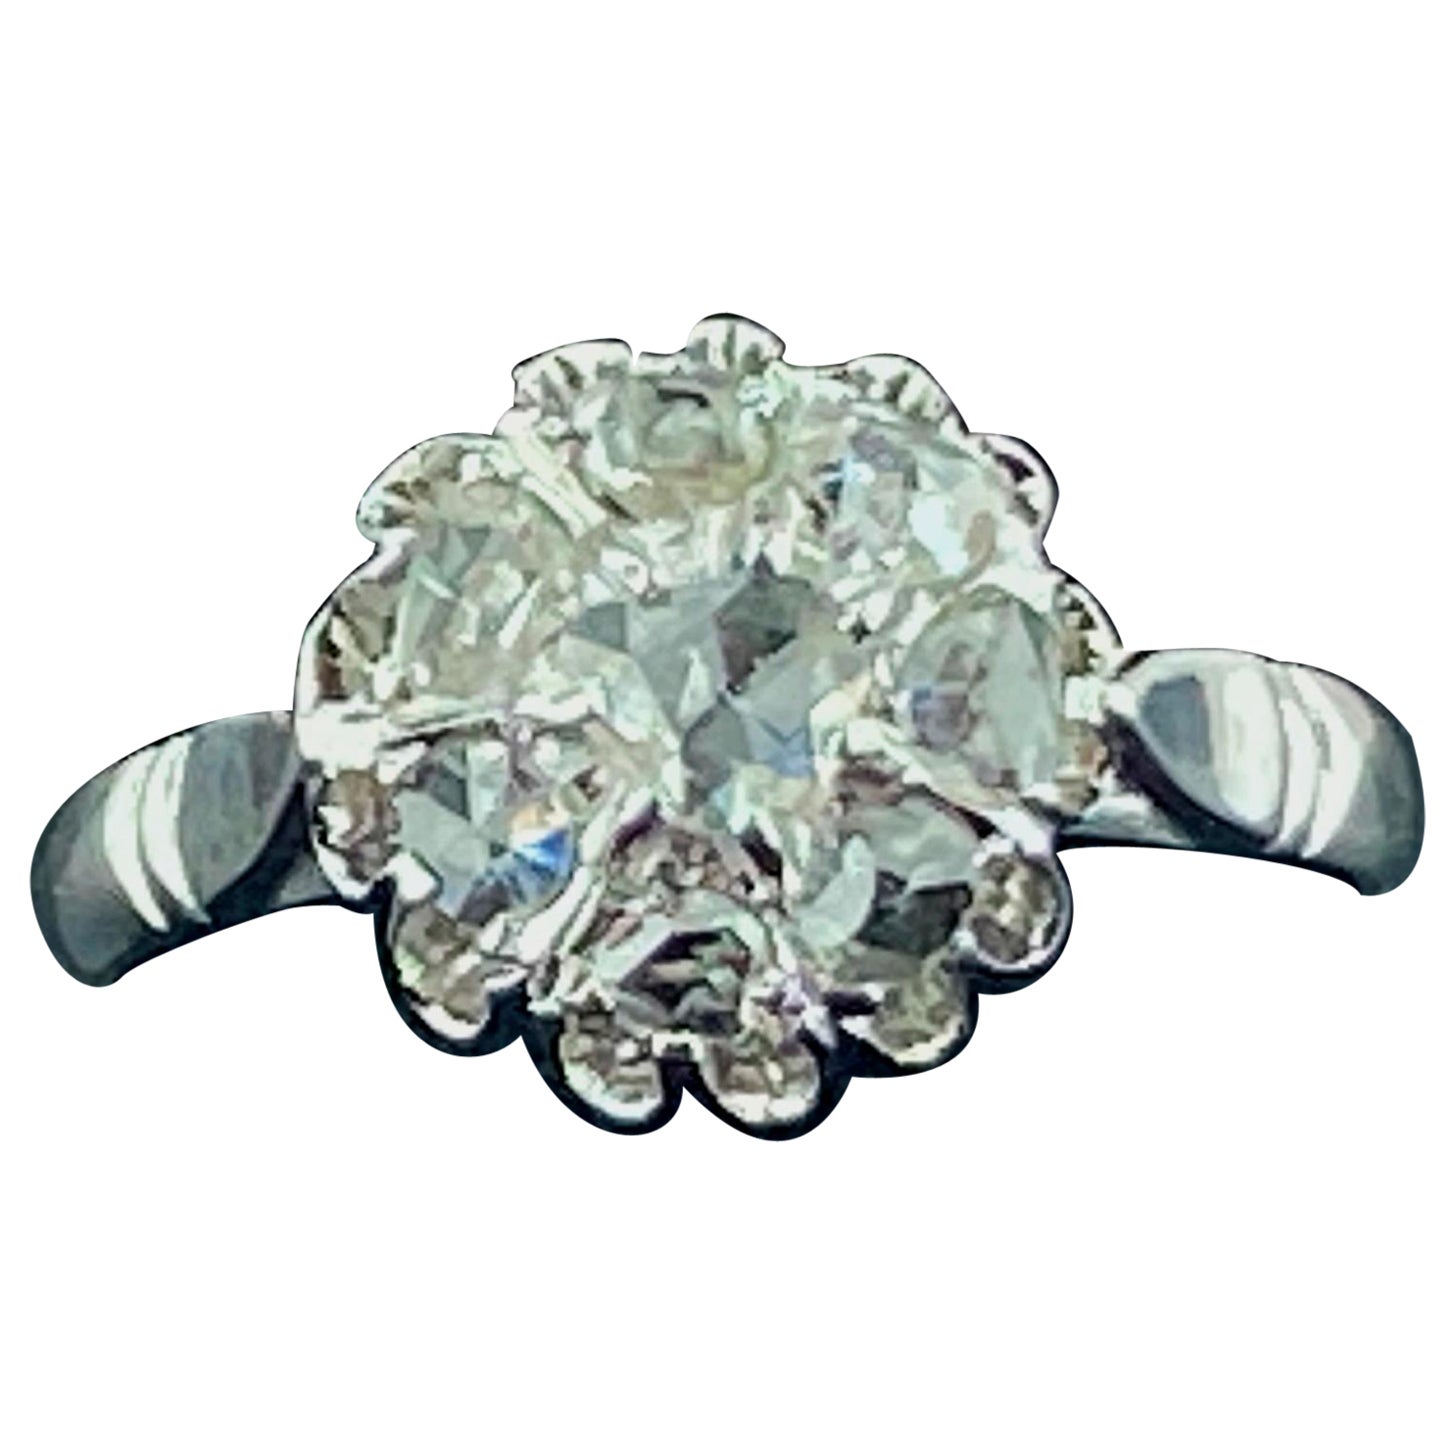 0.50 Carat Rose Cut Diamond Ring in 14 Karat White Gold